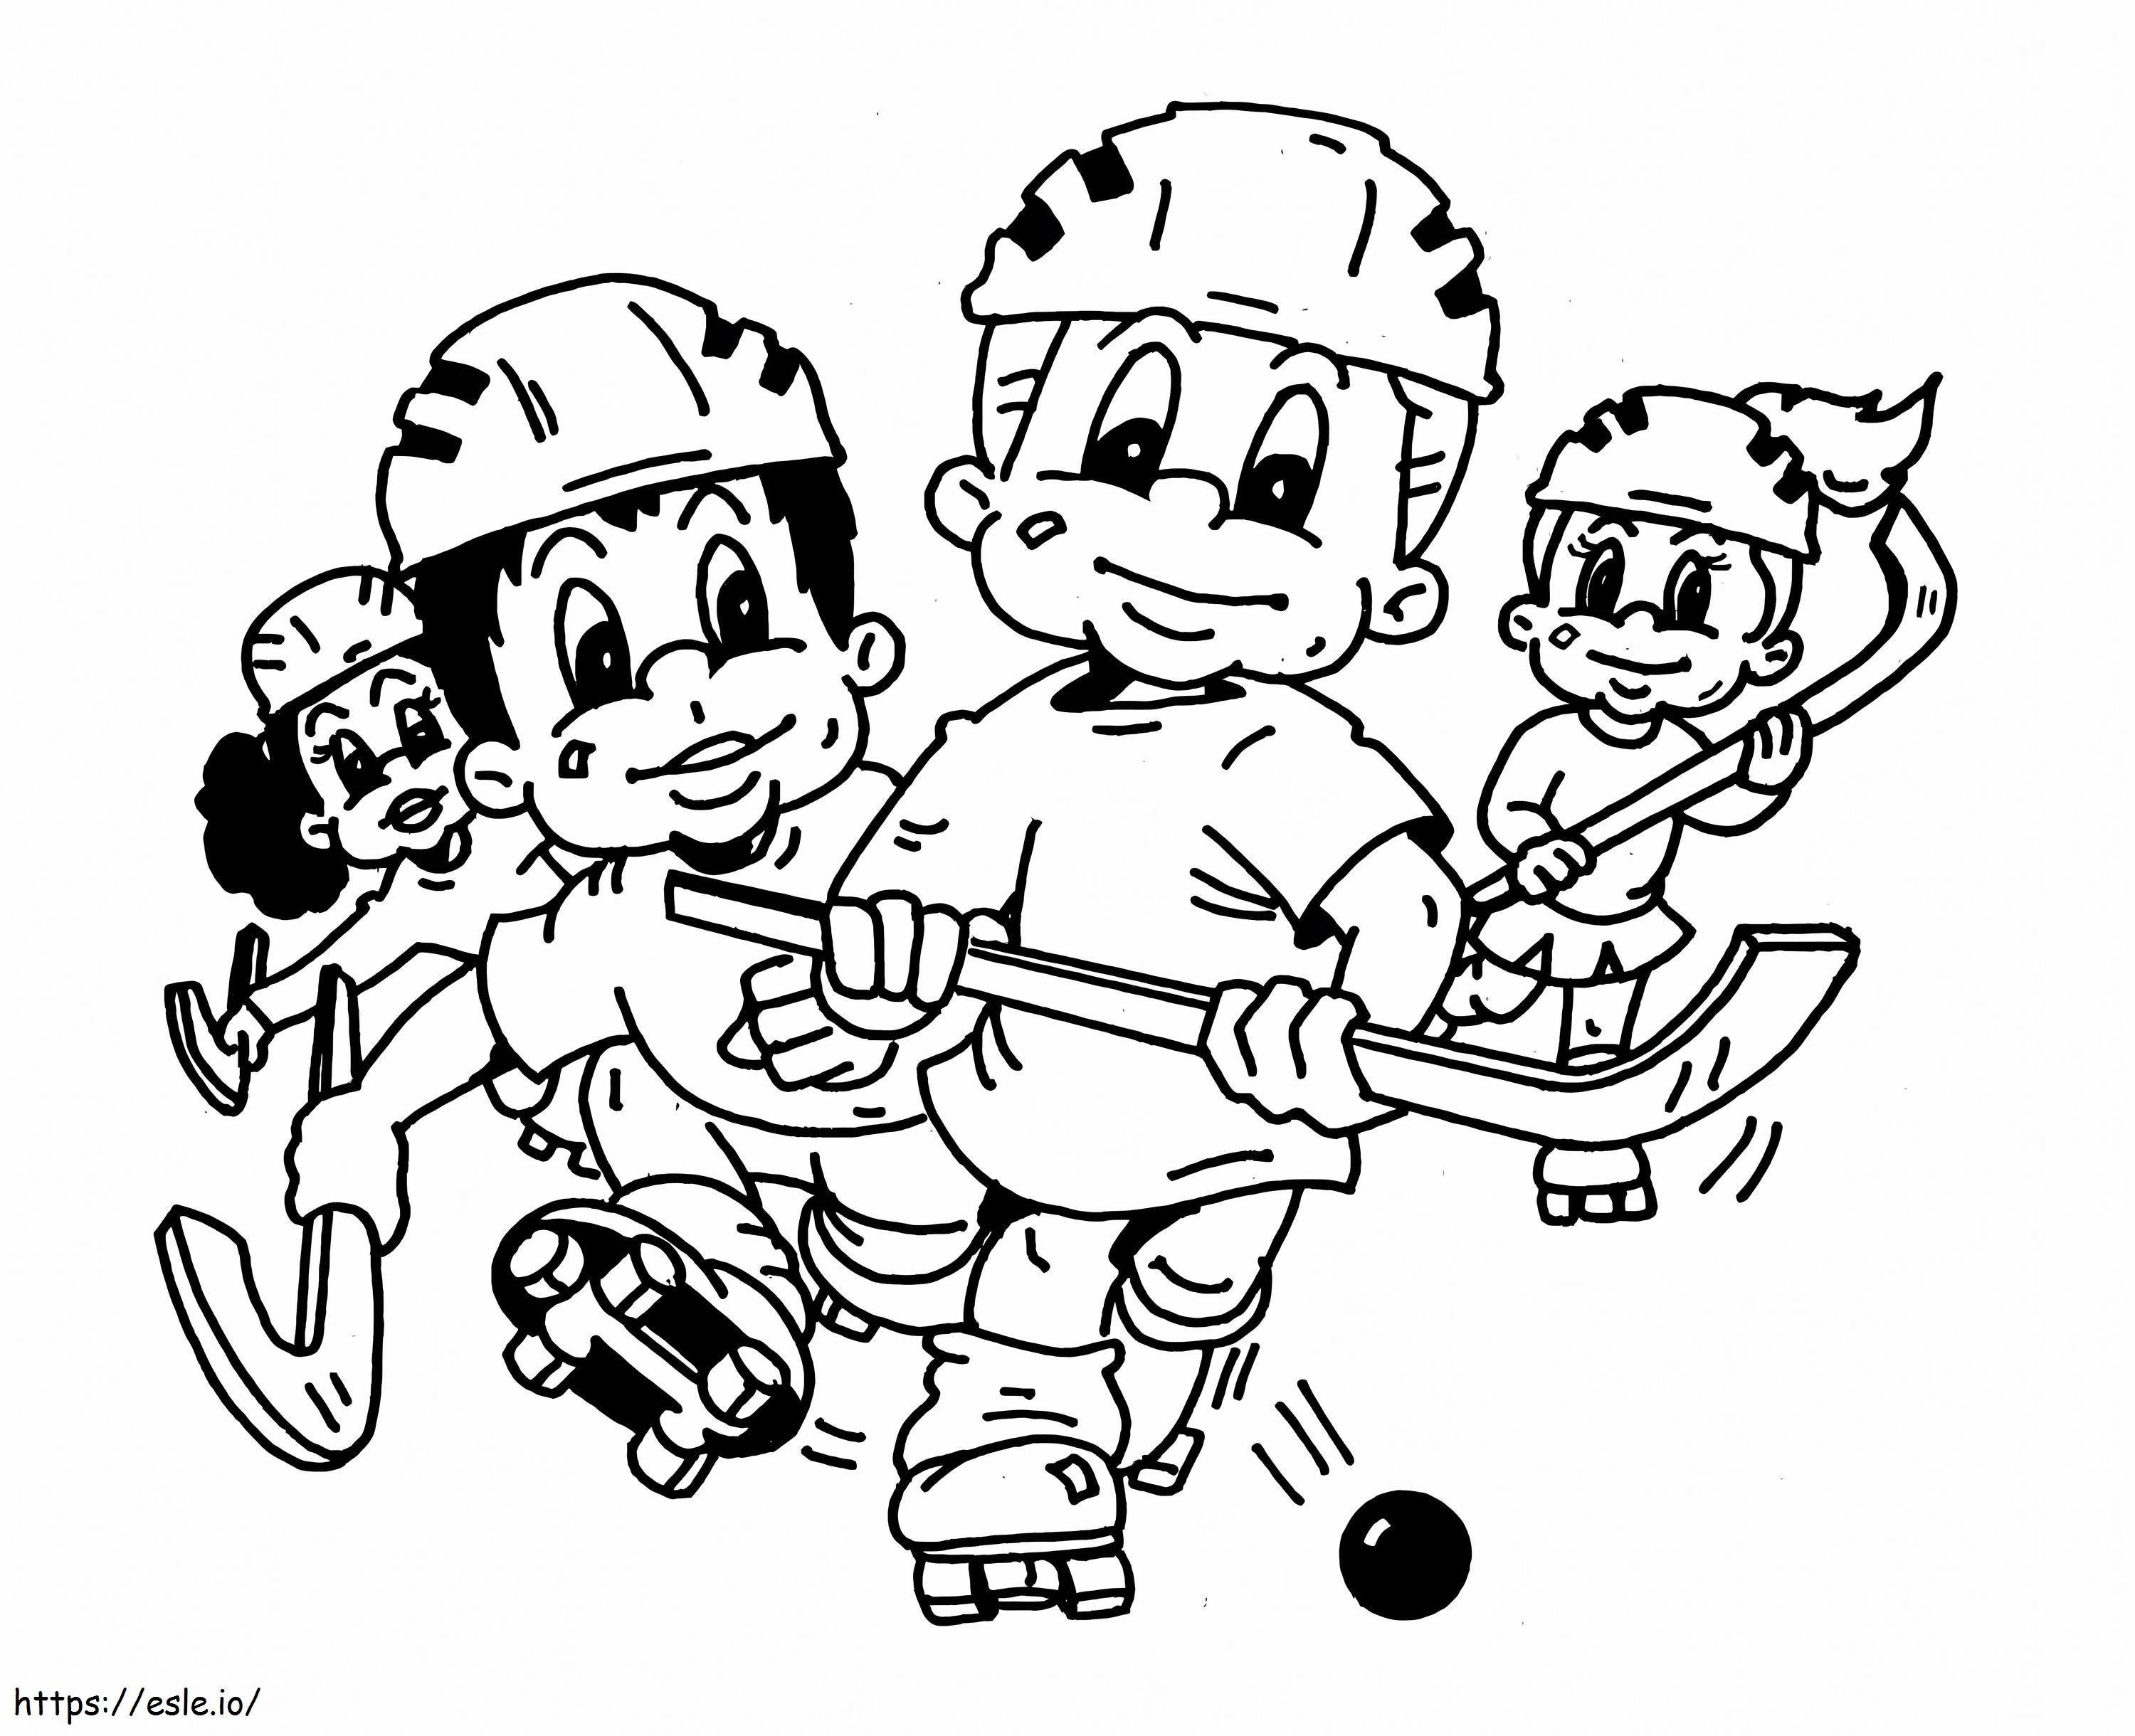 Cuatro niños jugando hockey para colorear